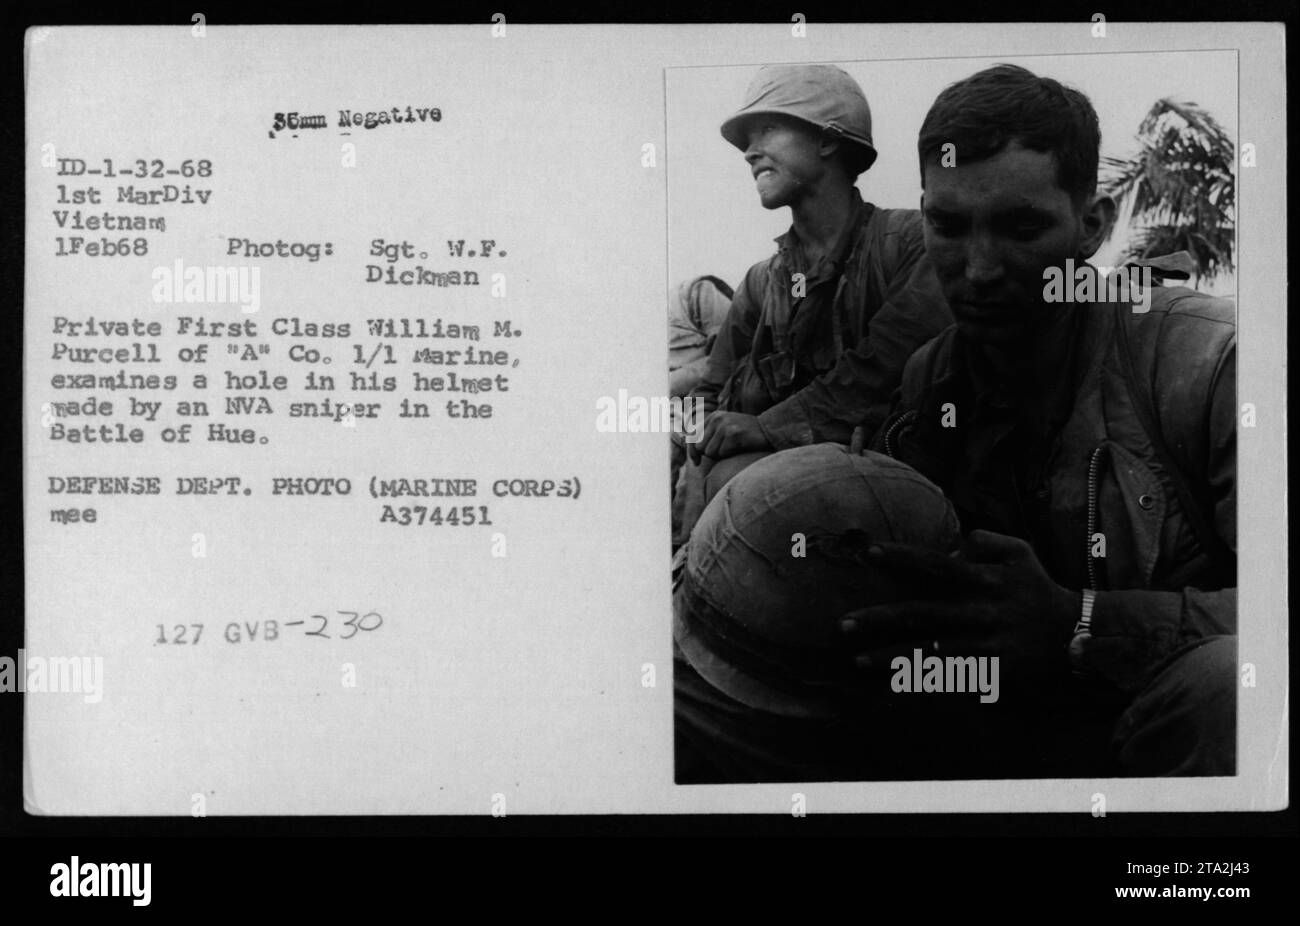 El soldado de primera clase William M. Purcell de 'A' Co. 1/1 Marine examina un agujero en su casco causado por un francotirador NVA durante la Batalla de Hue. Esta fotografía fue tomada el 1 de febrero de 1968 por el Sargento W. F. Dickman mientras servía en la Primera División de Marines en Vietnam. Foto de stock